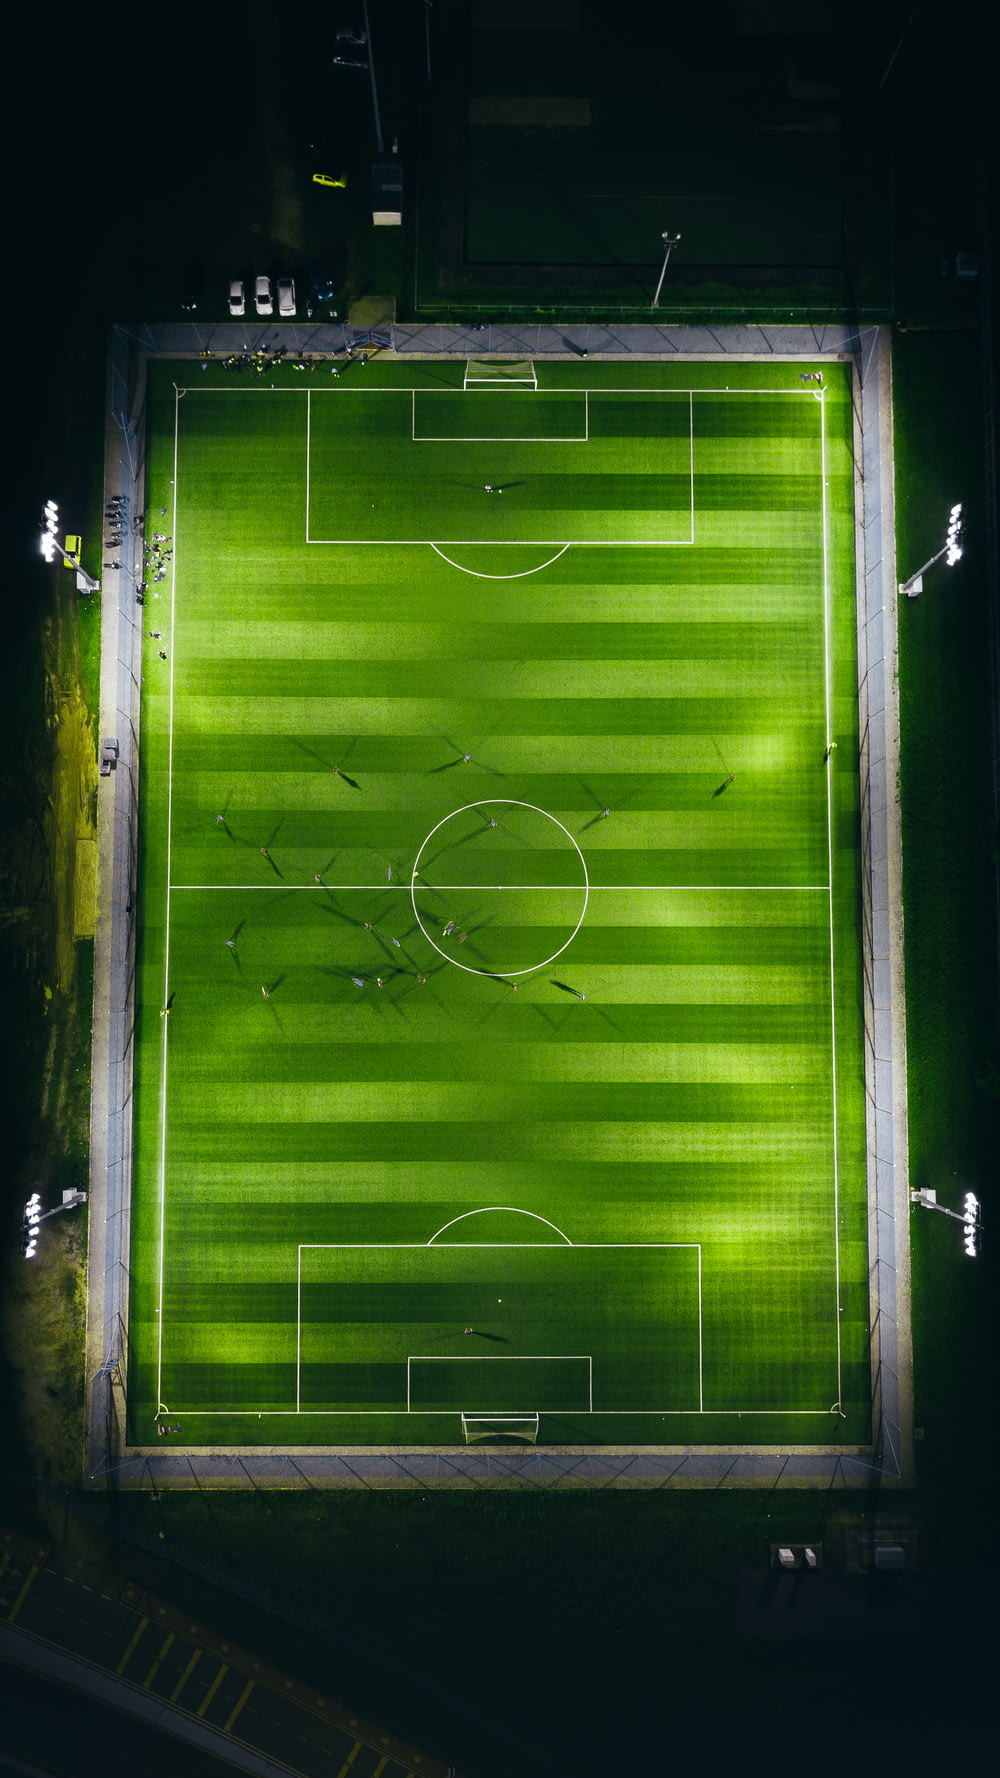 Fotografie aus der Vogelperspektive des grünen Fußballplatzes mit Lichtern